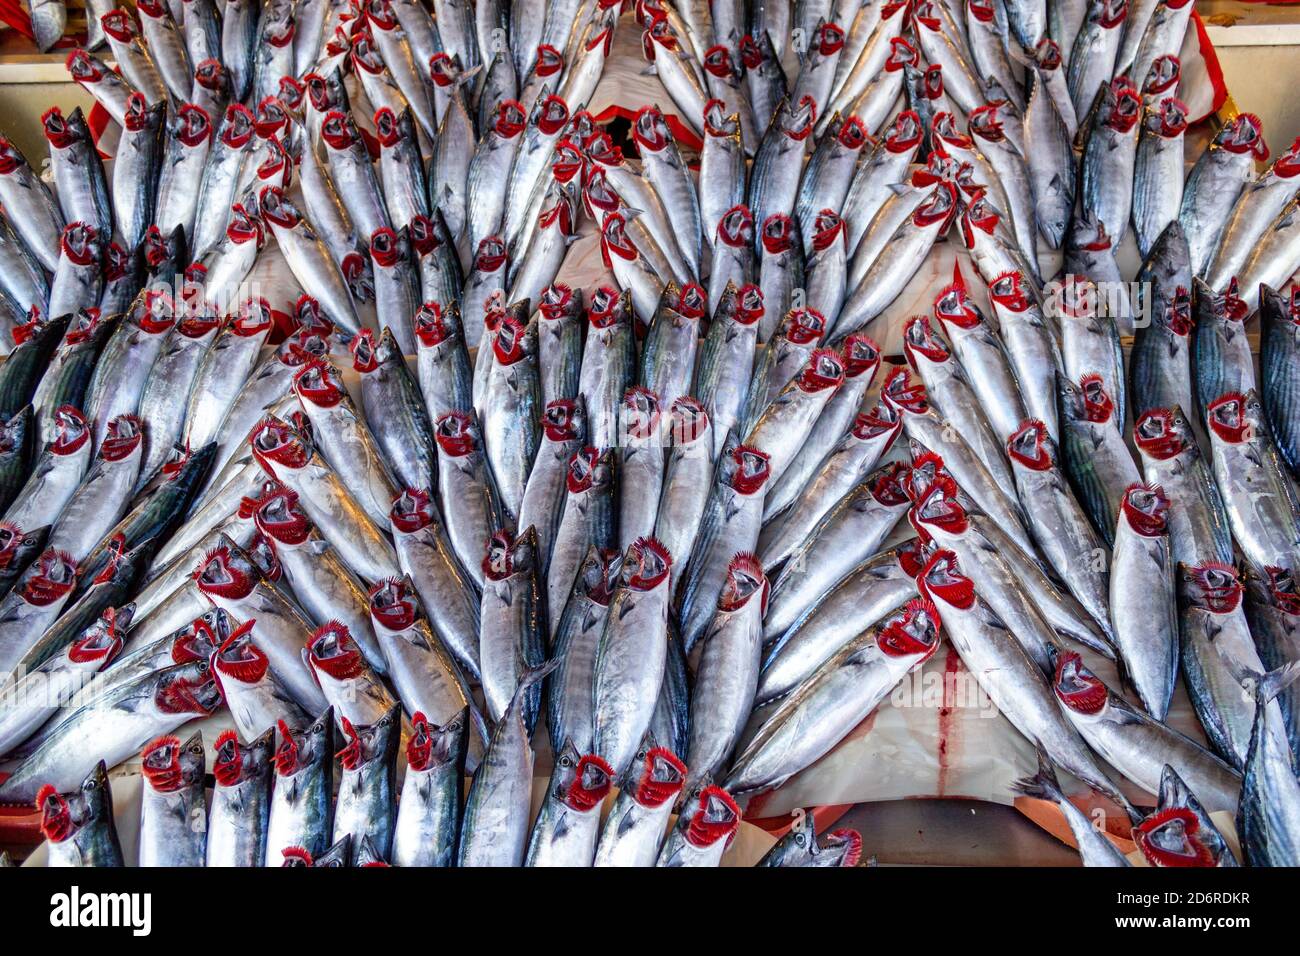 Frischer Bonito-Fisch (türkisch: Palamut) am Angelstand Stockfoto